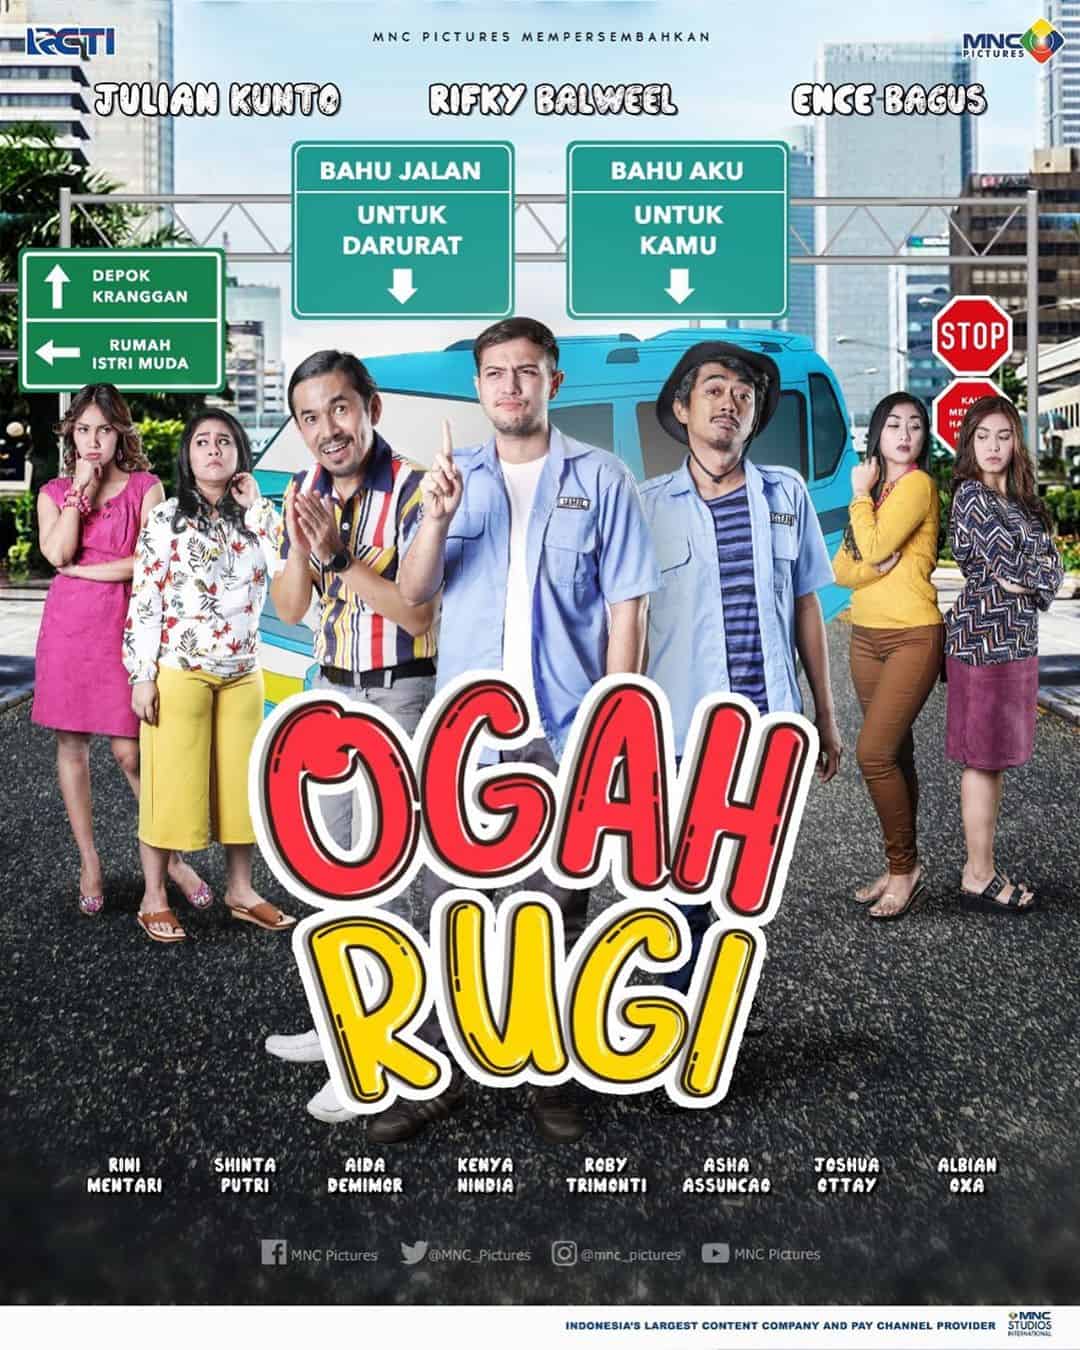 Sinopsis Ogah Rugi Episode 1 - Terakhir Lengkap (Sinetron RCTI)